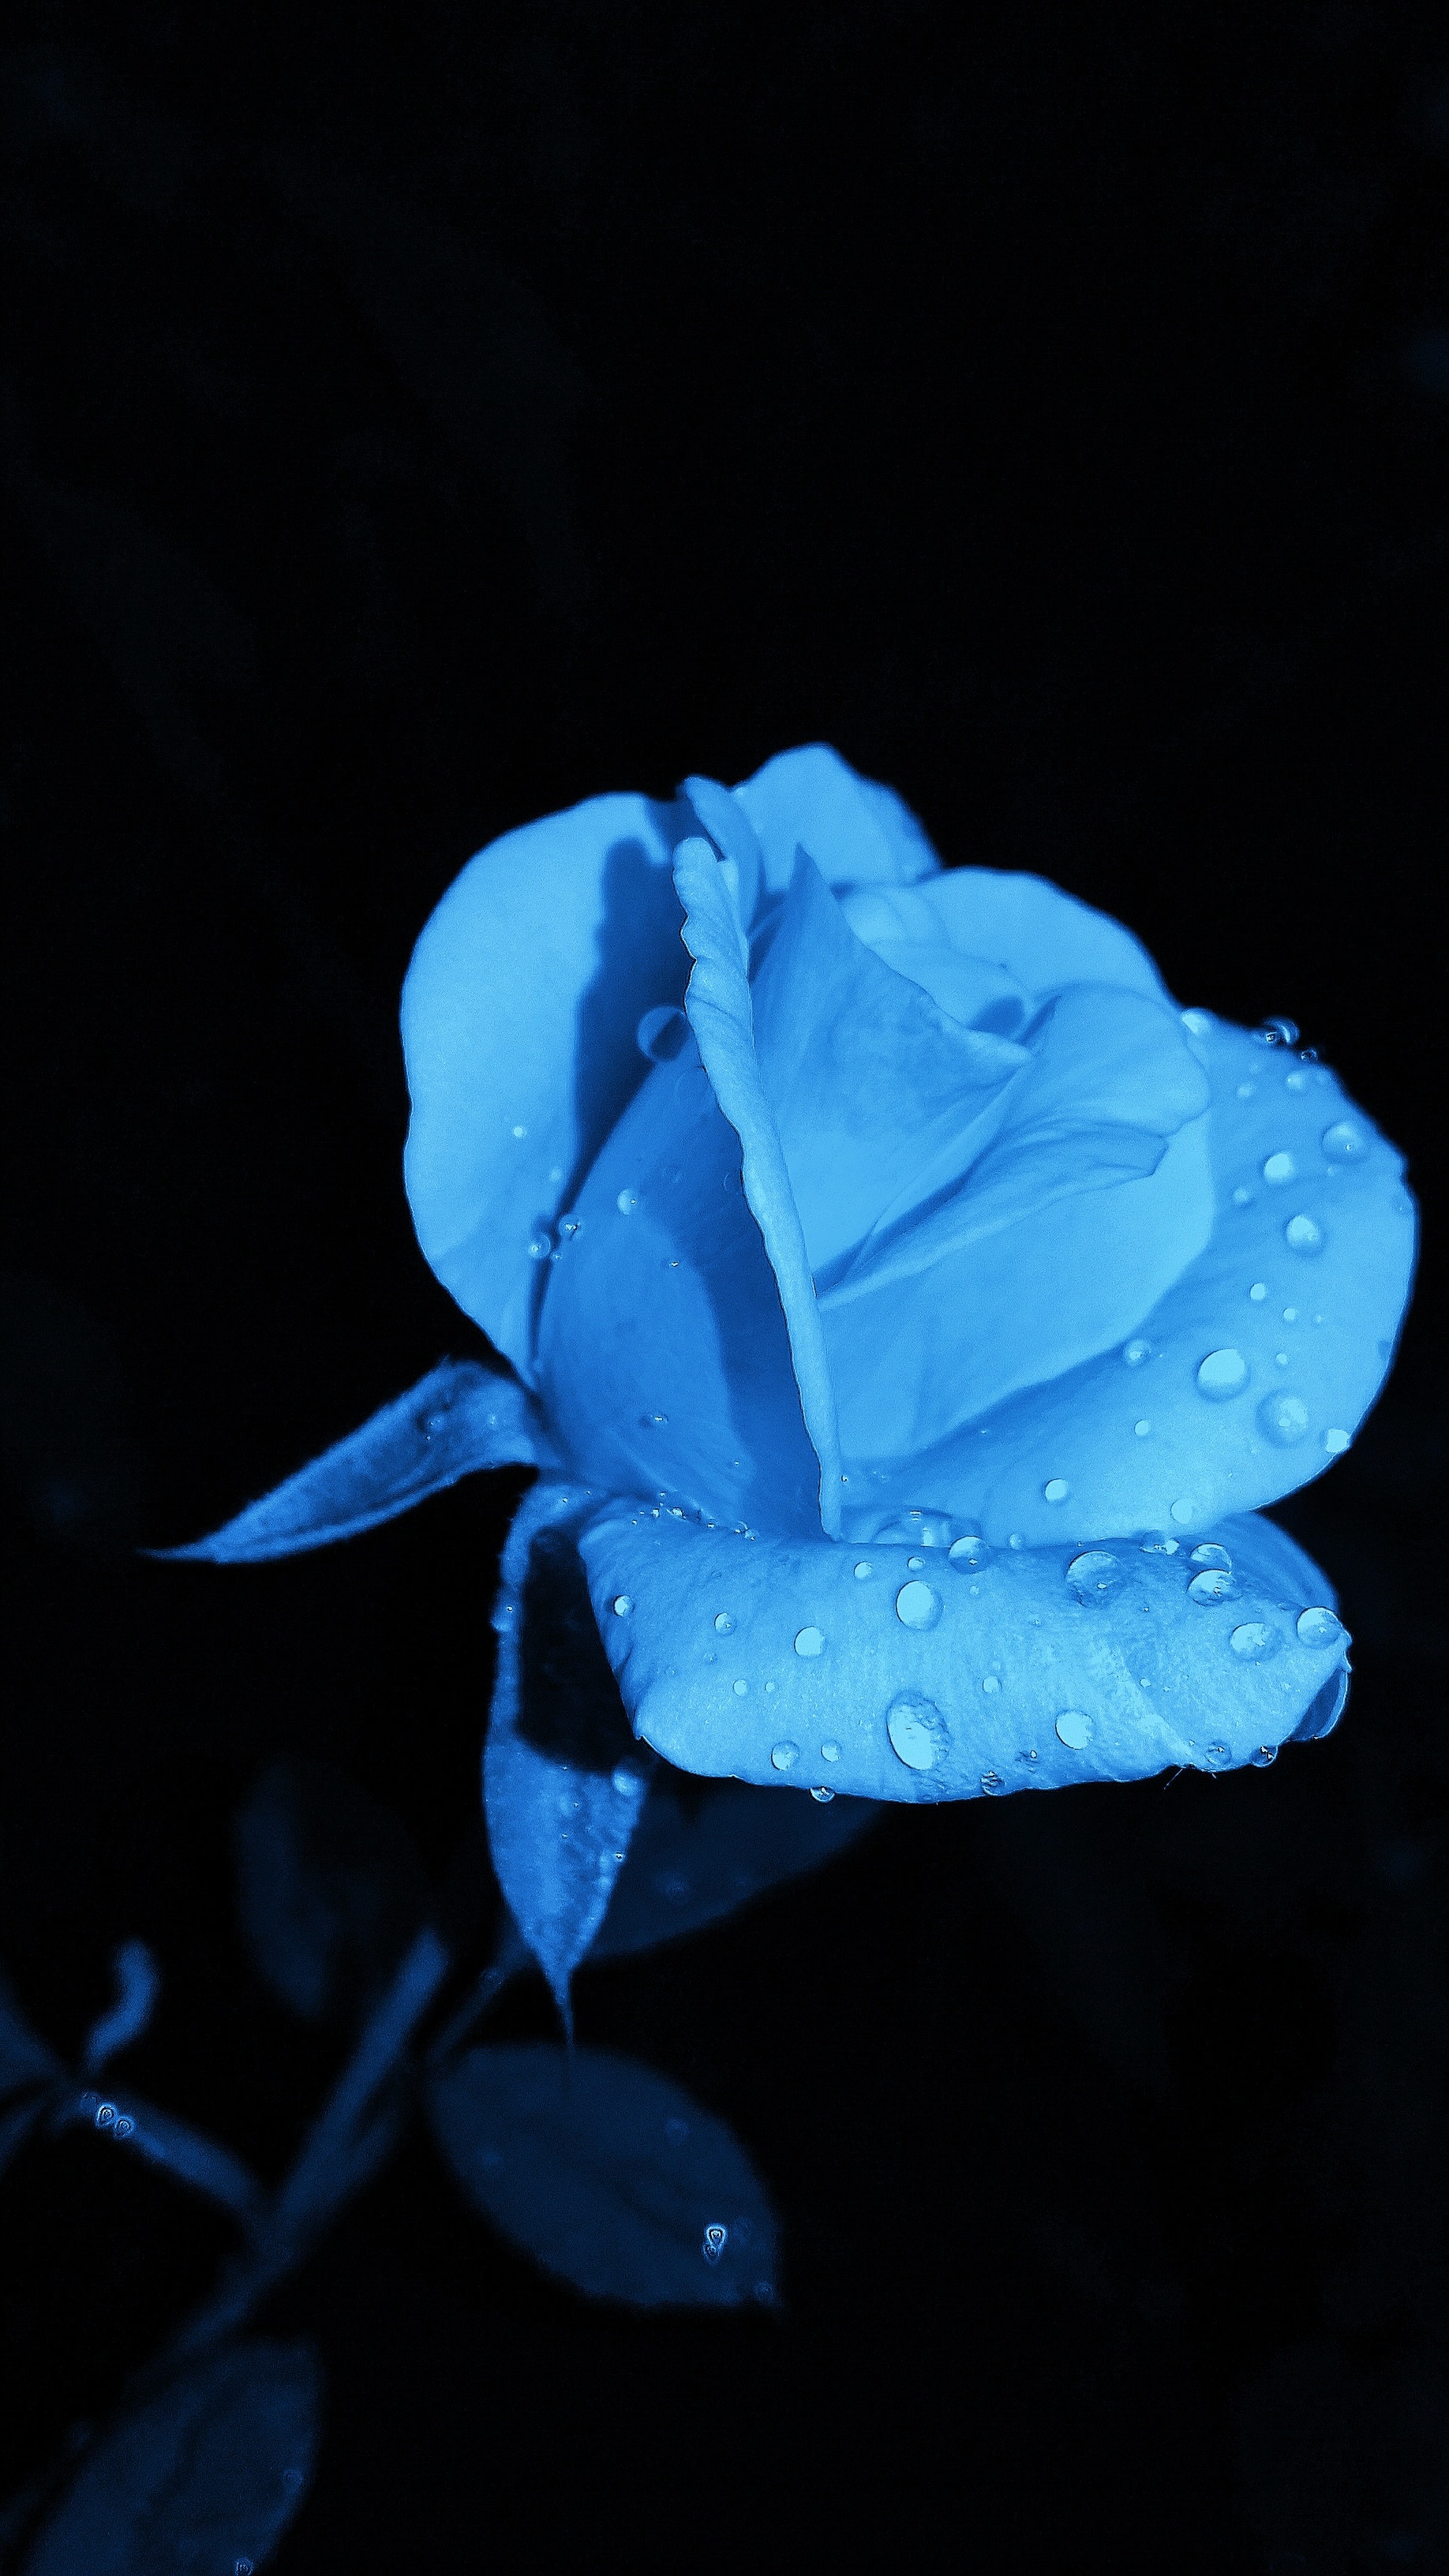 rosentapete hd,blau,blaue rose,blütenblatt,rose,wasser